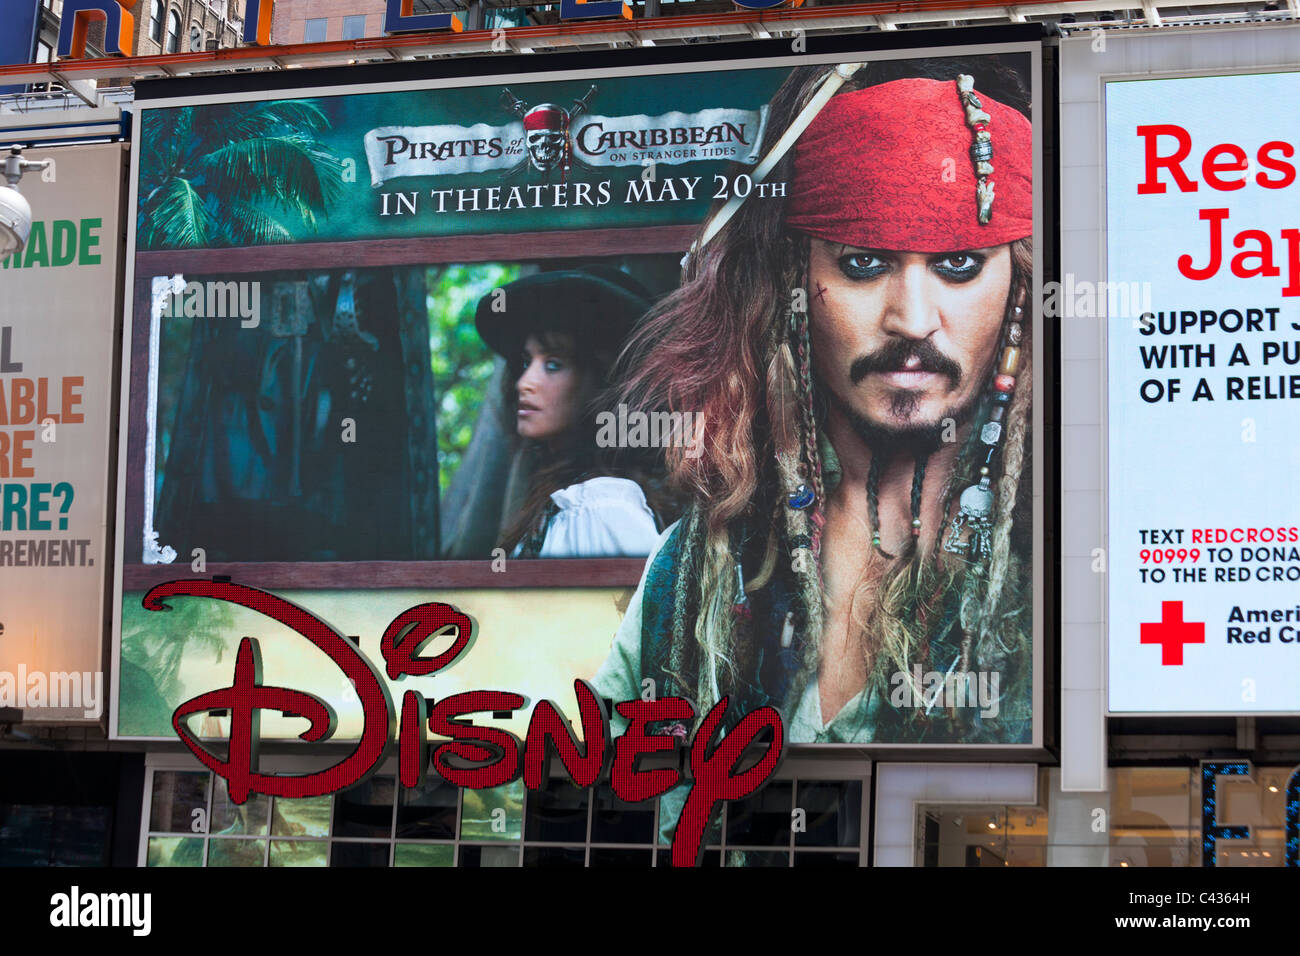 Publicité pour Pirates des Caraïbes sur Stranger Tides, Times Square, Manhattan, New York City, USA Banque D'Images